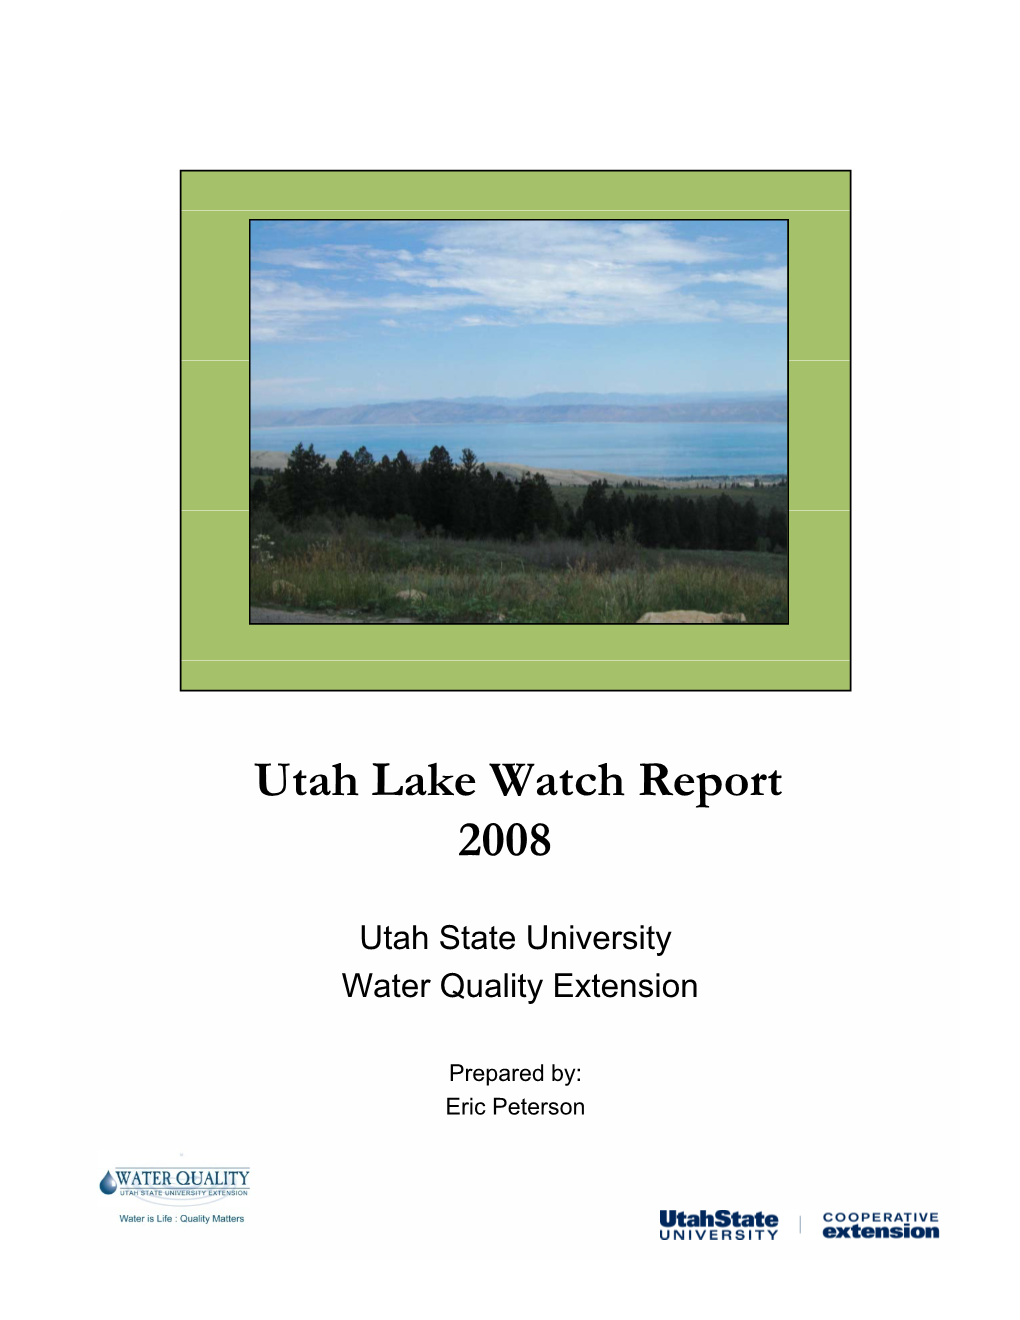 Utah Lake Watch Report 2008